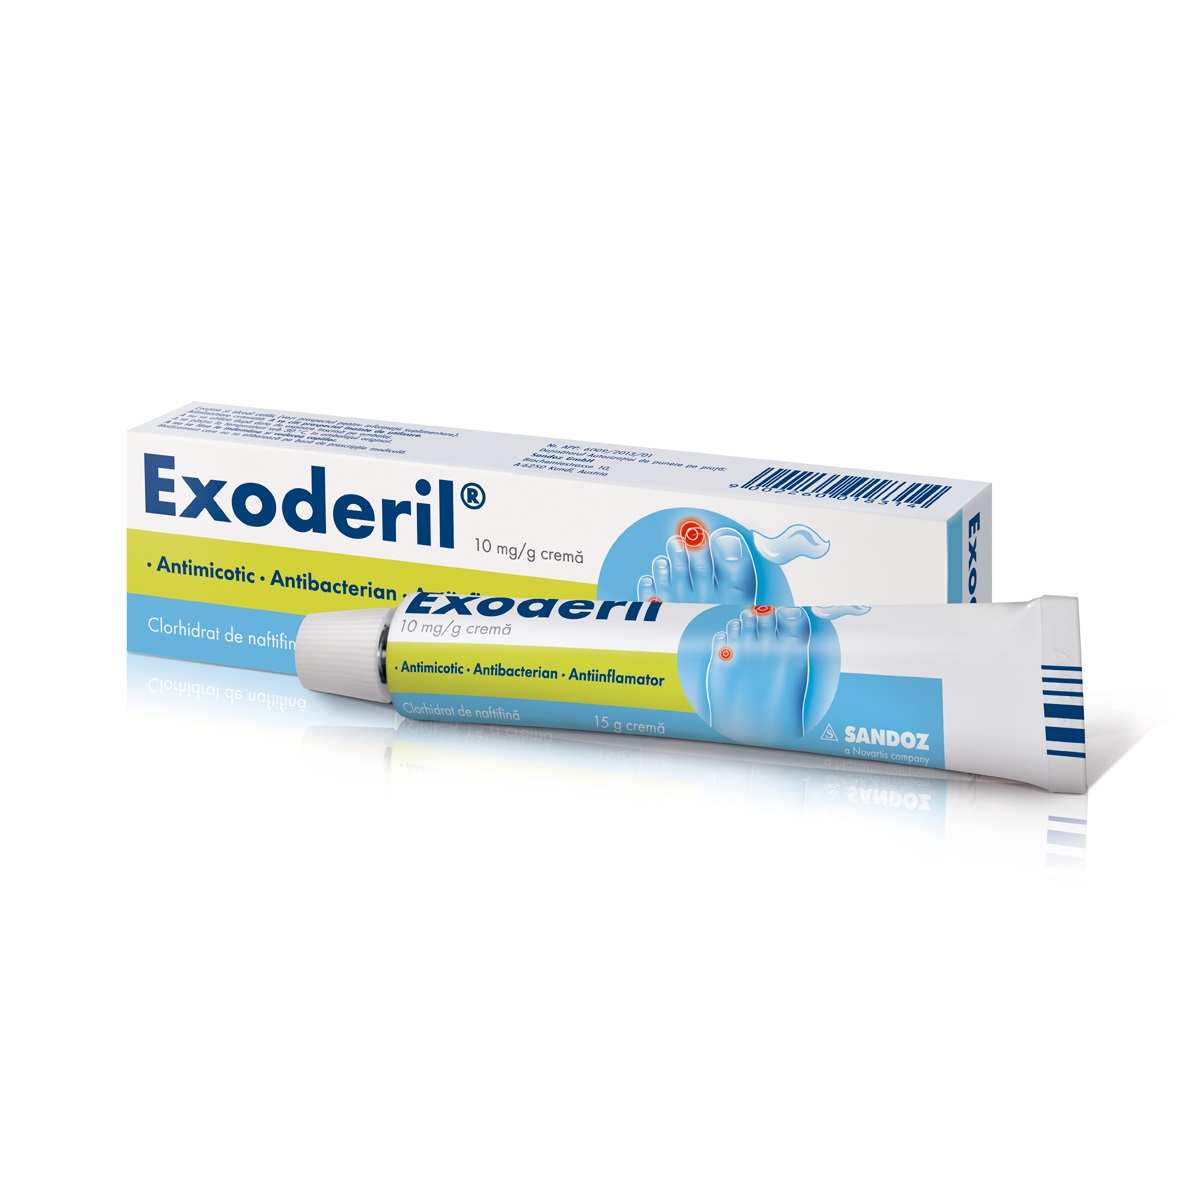 OTC (medicamente care se eliberează fără prescripție medicală) - Exoderil 1% crema 15g, epastila.ro